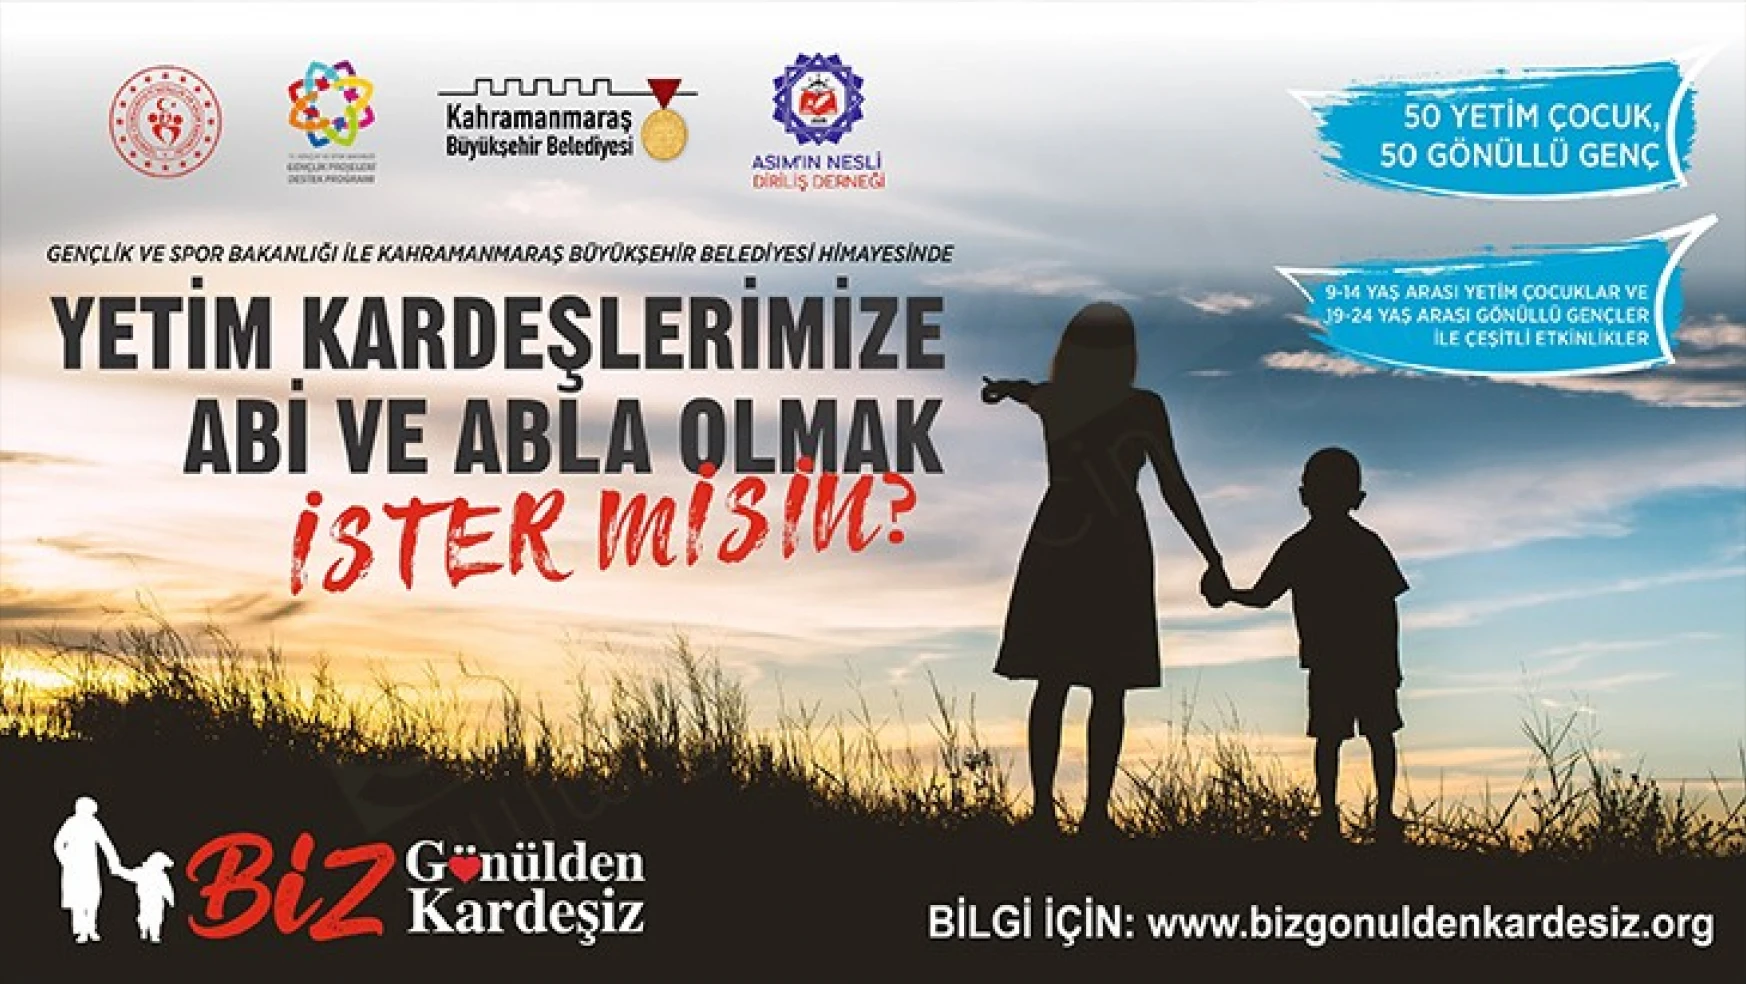 Kahramanmaraş'ta 'Biz Gönülden Kardeşiz' projesine gönüllüler arınıyor